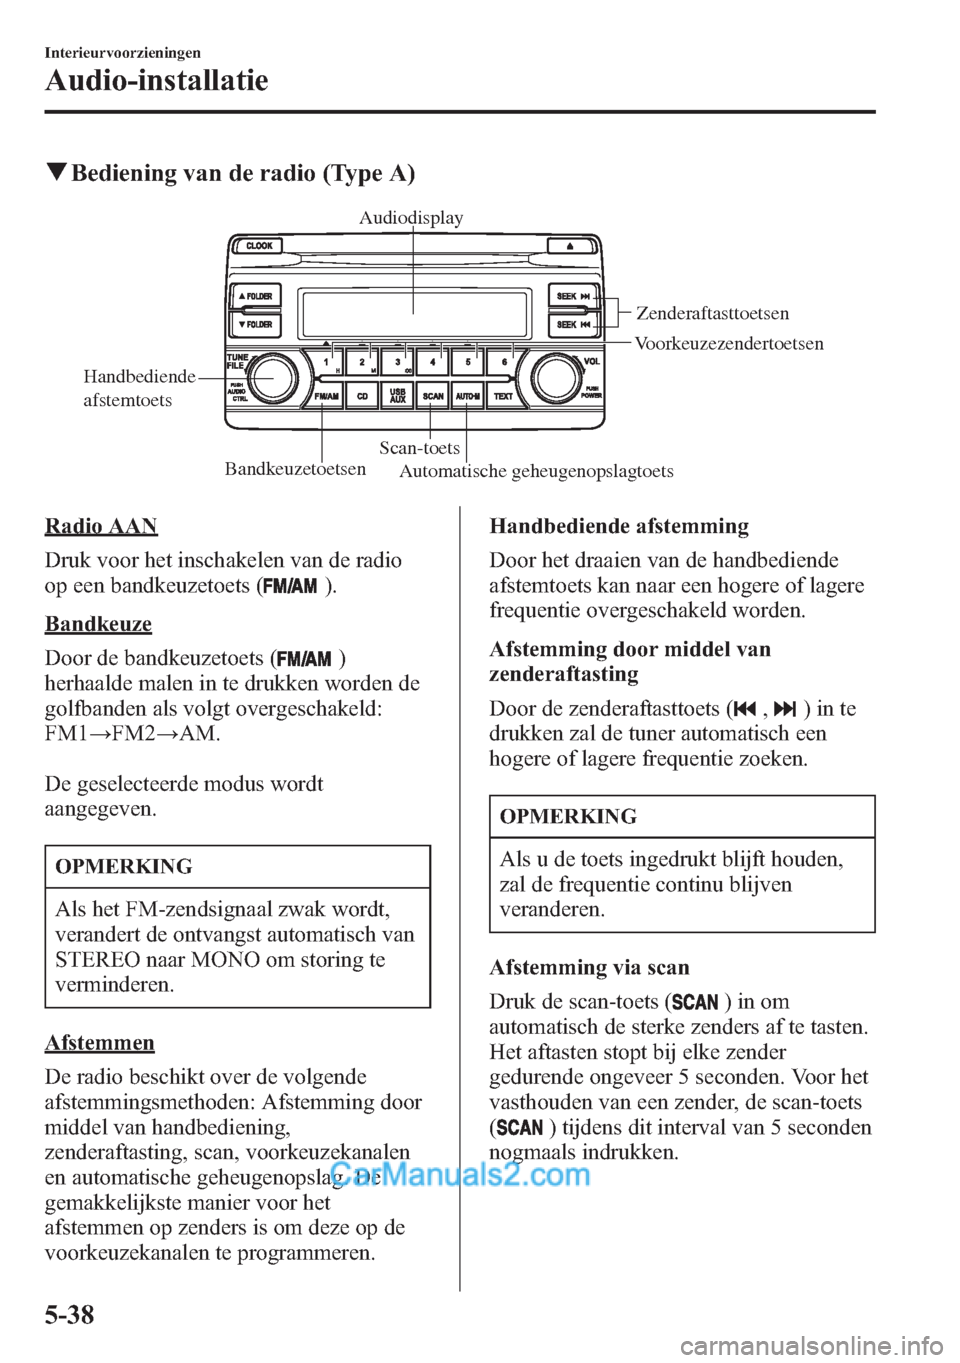 MAZDA MODEL CX-5 2015  Handleiding (in Dutch) qBediening van de radio (Type A)
BandkeuzetoetsenScan-toetsZenderaftasttoetsen 
Voorkeuzezendertoetsen
Automatische geheugenopslagtoets Handbediende 
afstemtoetsAudiodisplay
Radio AAN
Druk voor het in